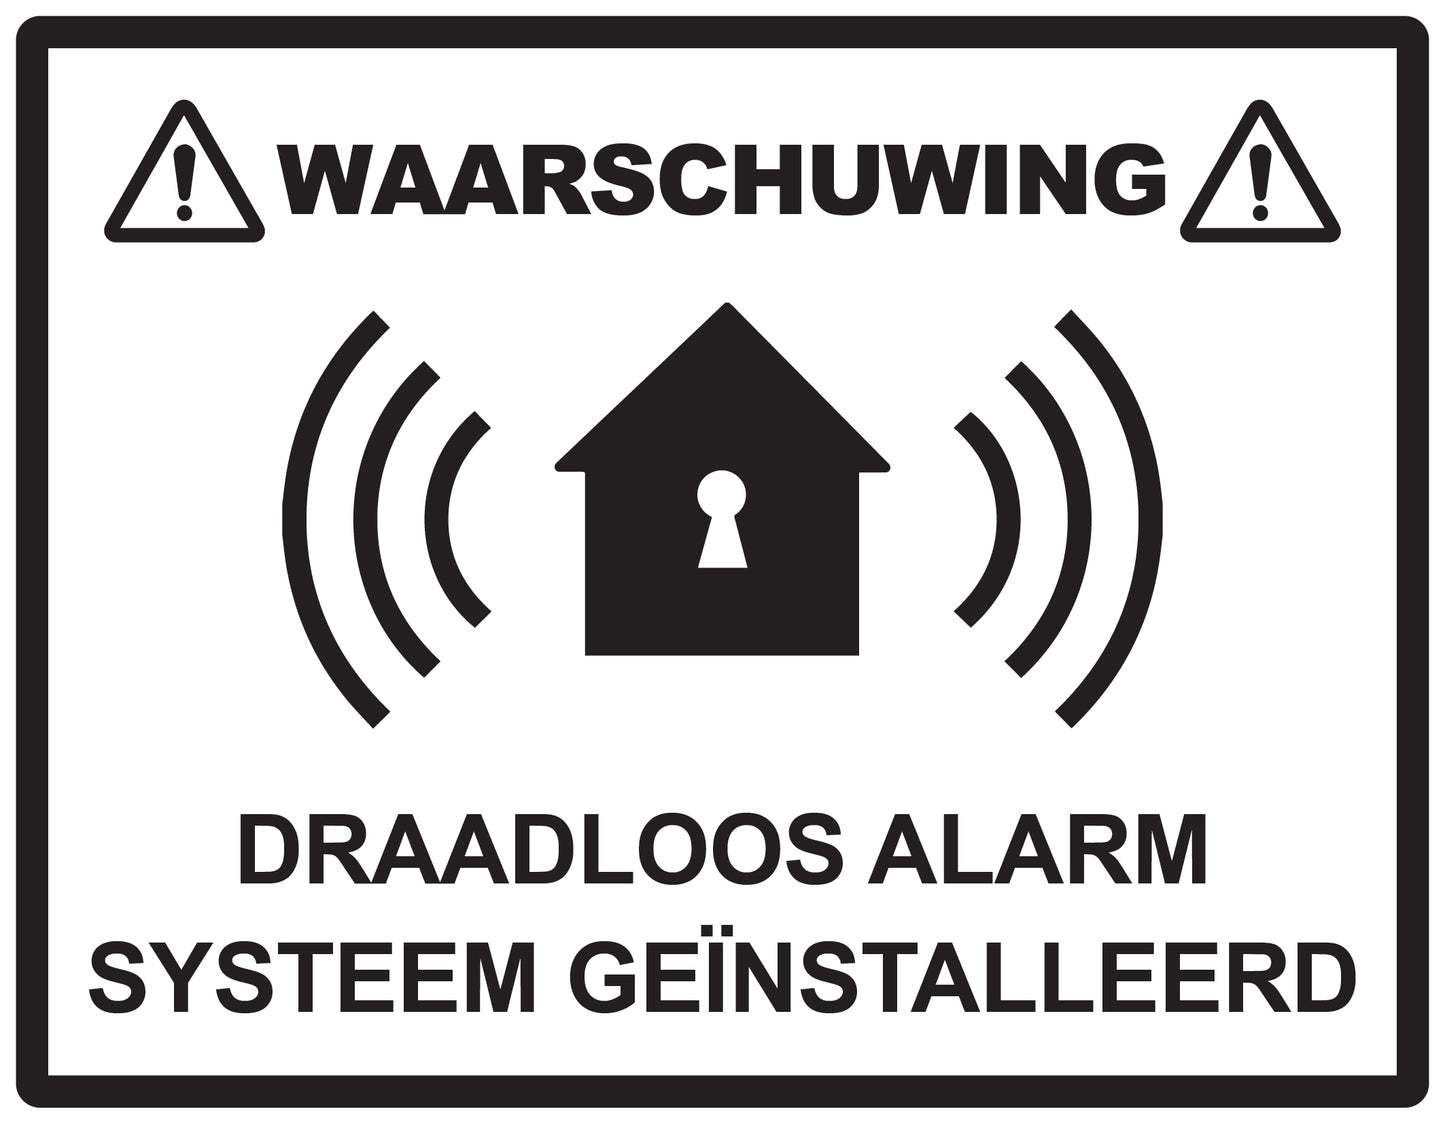 Alarm sticker 2-7 cm EW-ALARM-H-11200-88 Materiaal : transparant